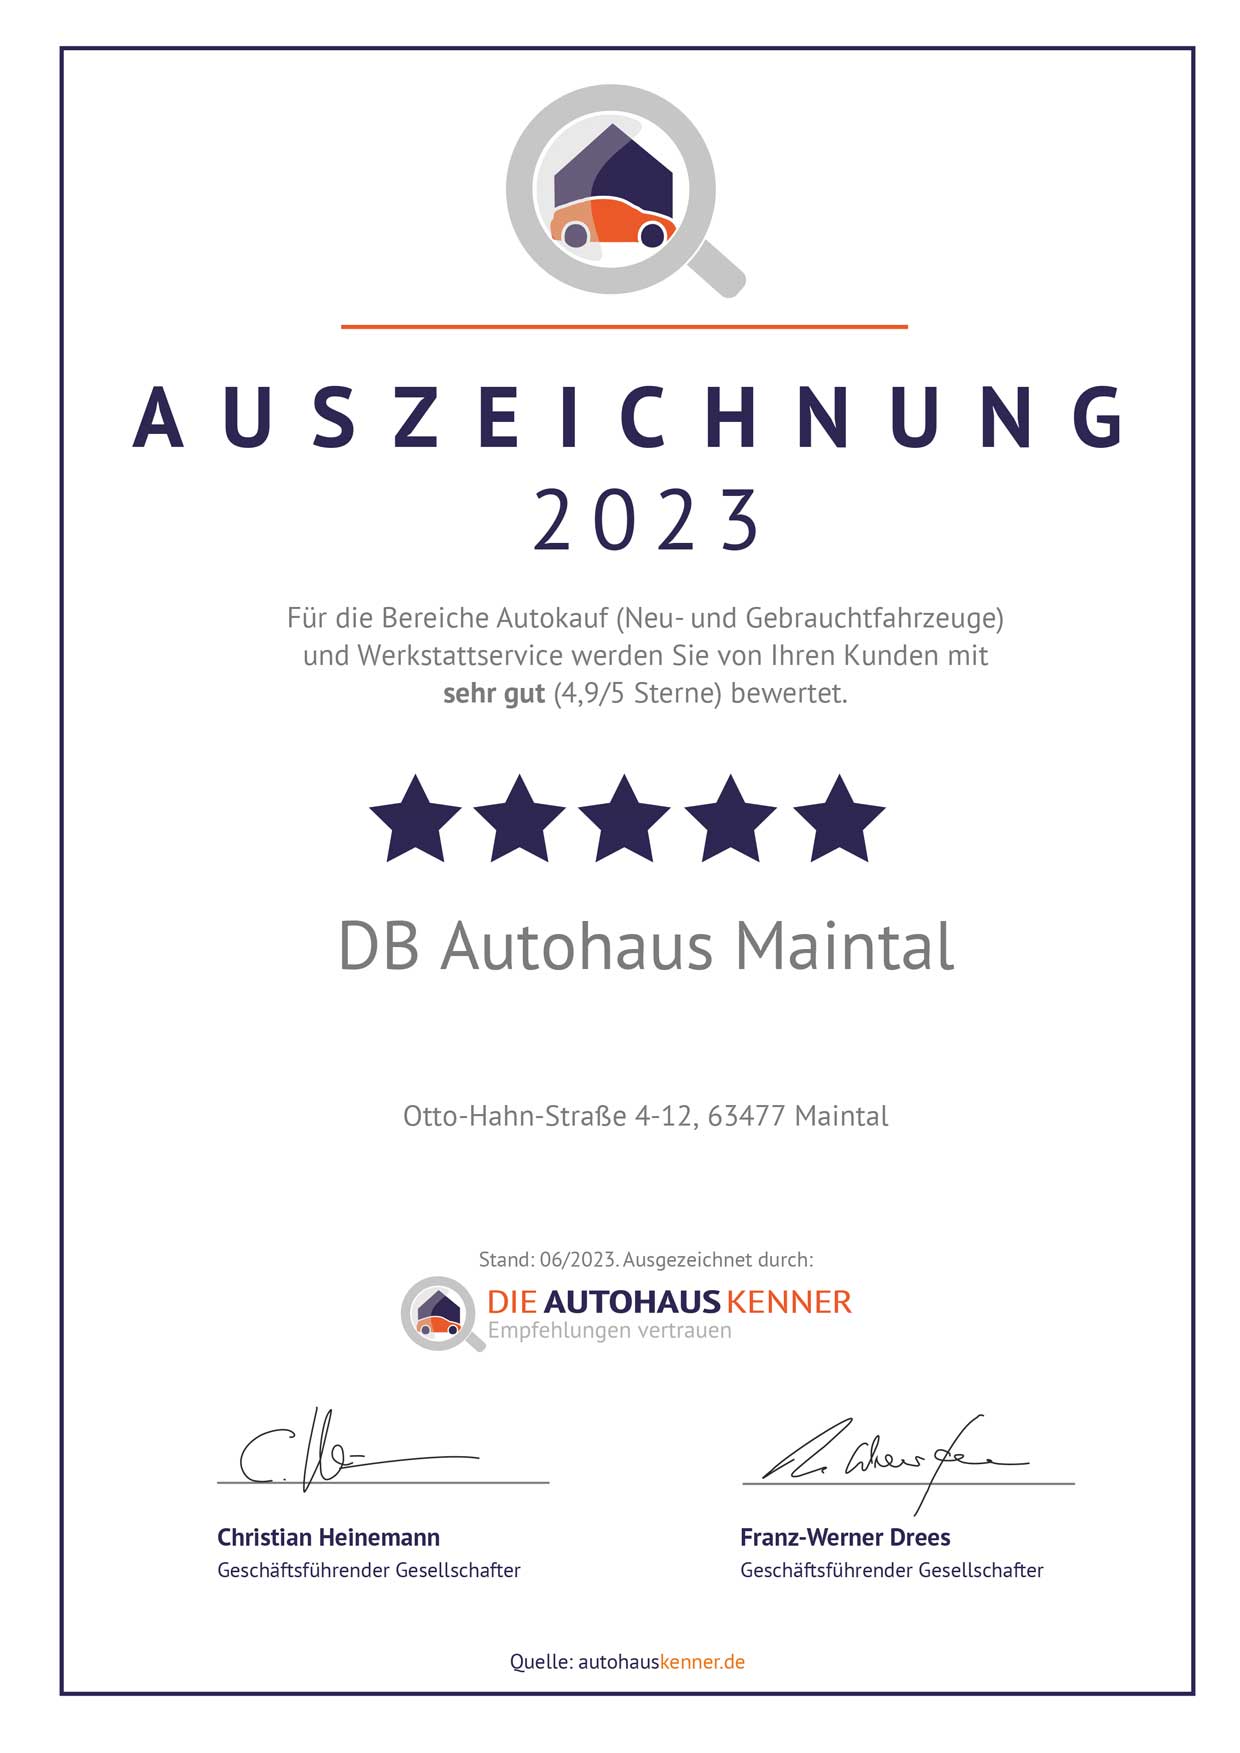 Auszeichnung von Autohauskenner für DB Autohaus Maintal 2023